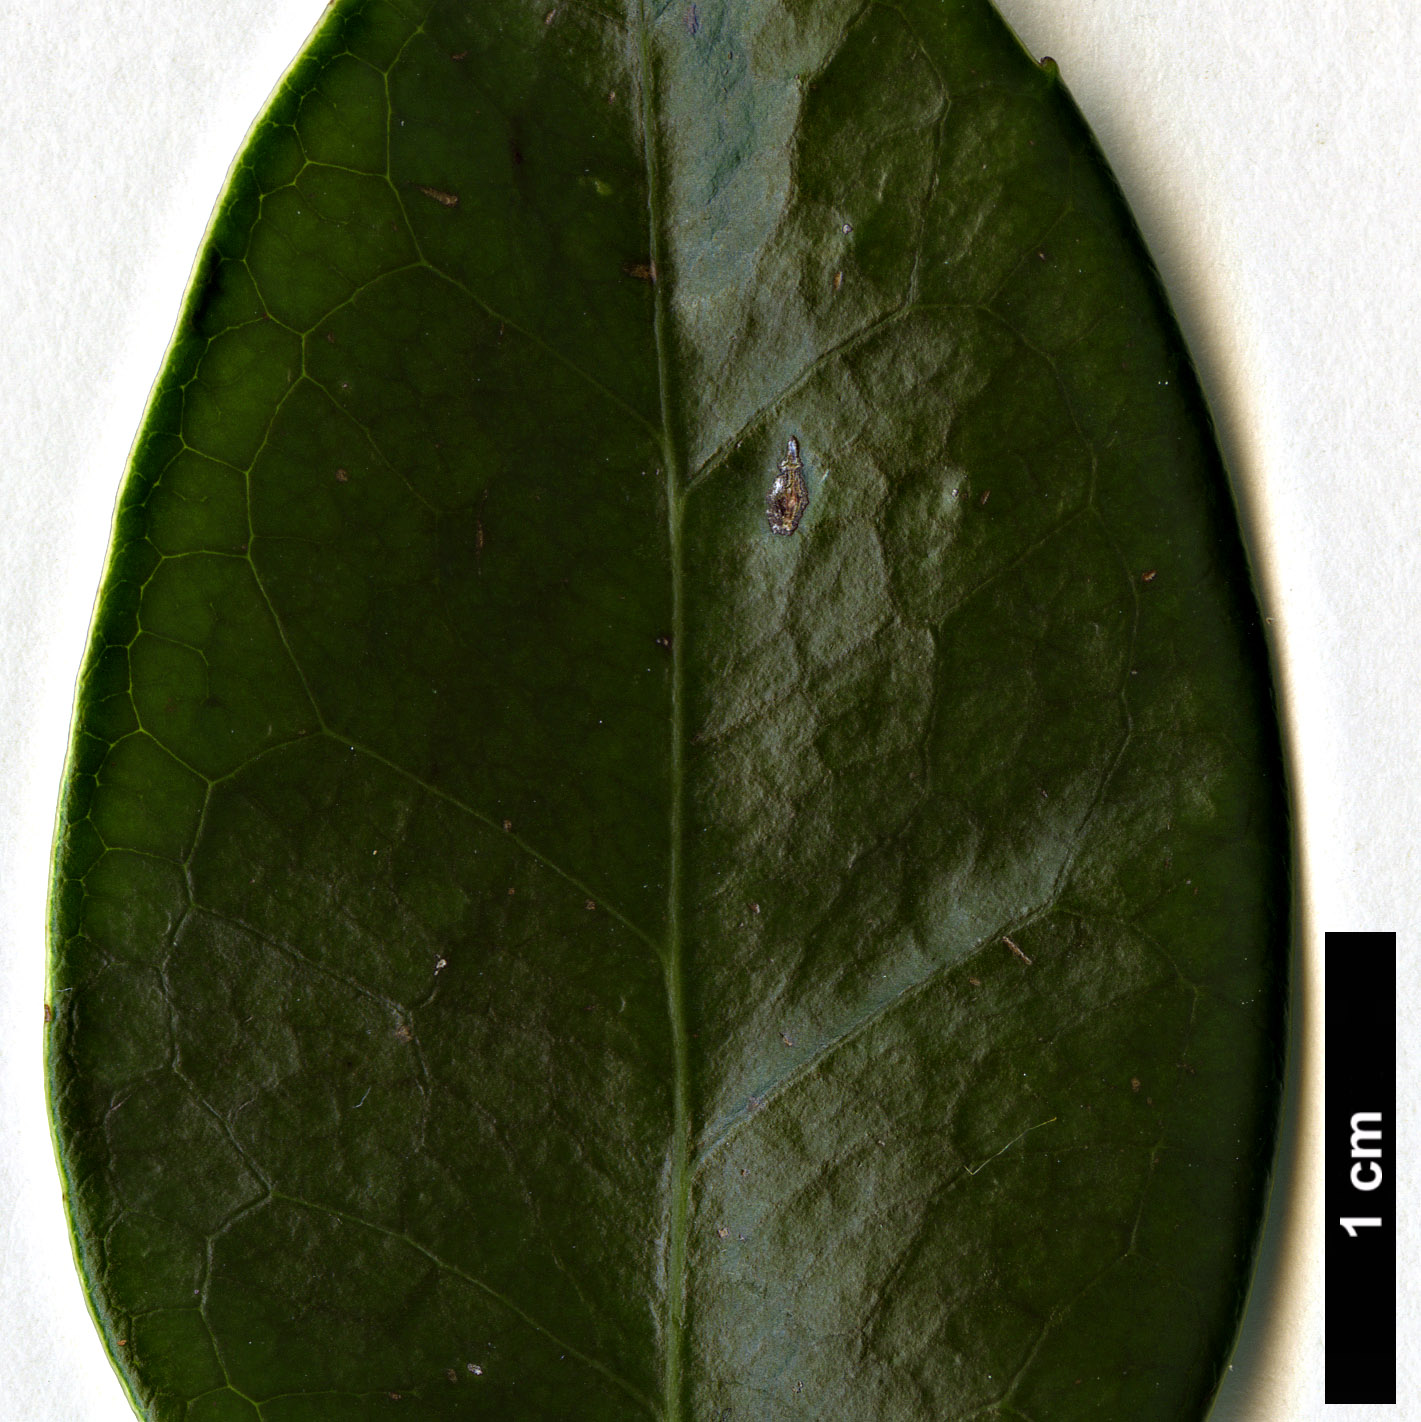 High resolution image: Family: Altingiaceae - Genus: Liquidambar - Taxon: gracilipes